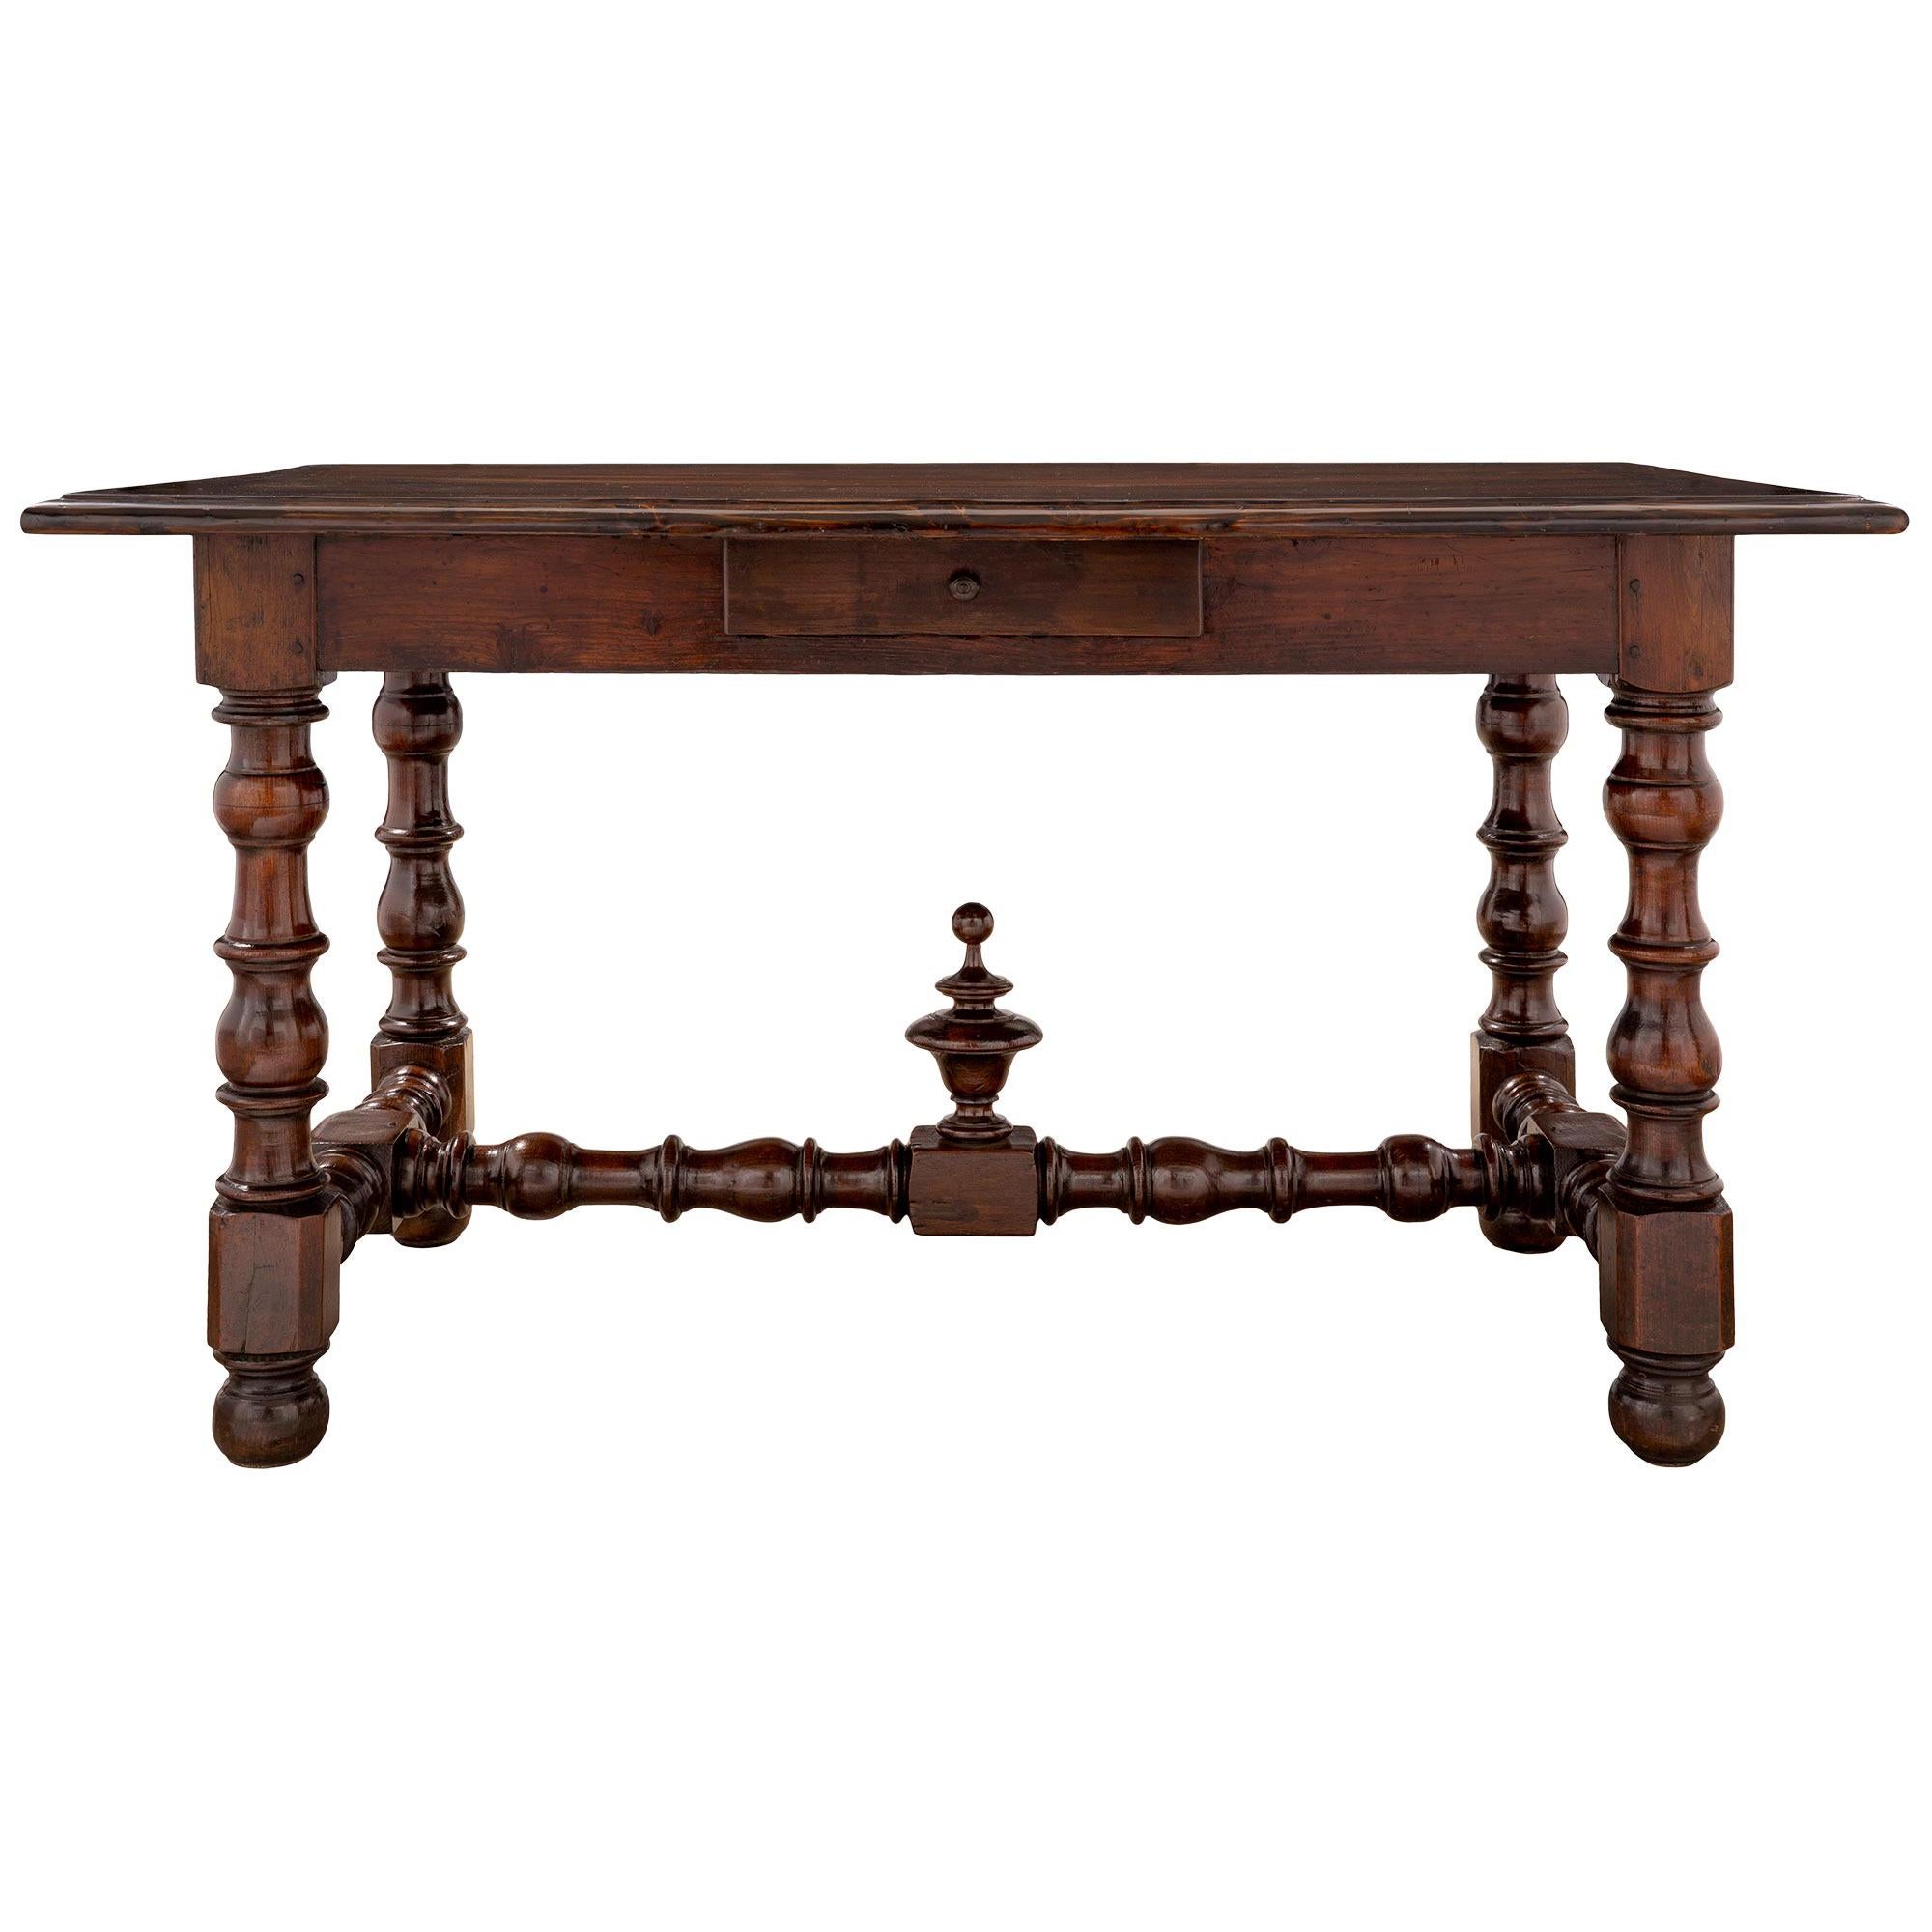 Table centrale en chêne foncé de style Louis XVI du XIXe siècle français